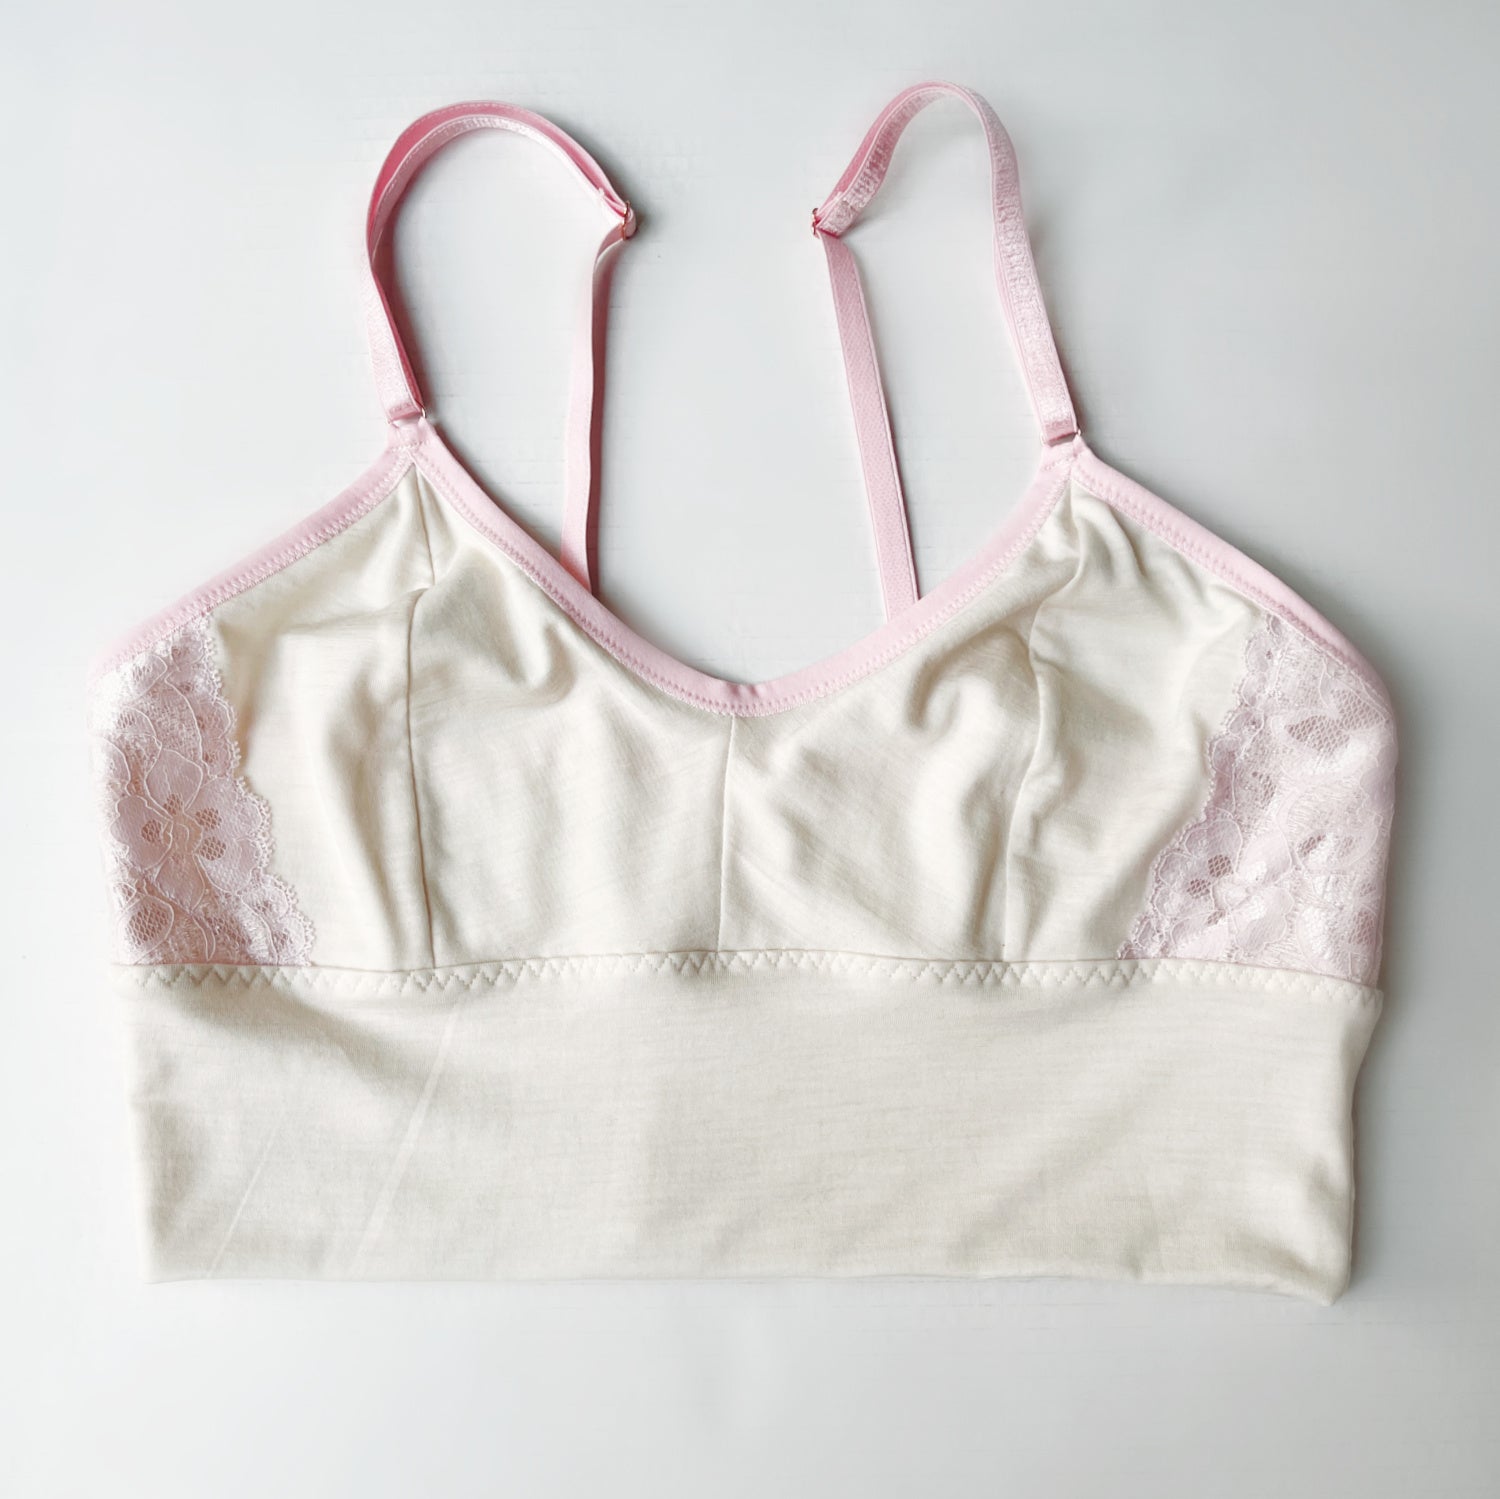 Merino wool womens bras  Shop wool lingerie for women from Canada